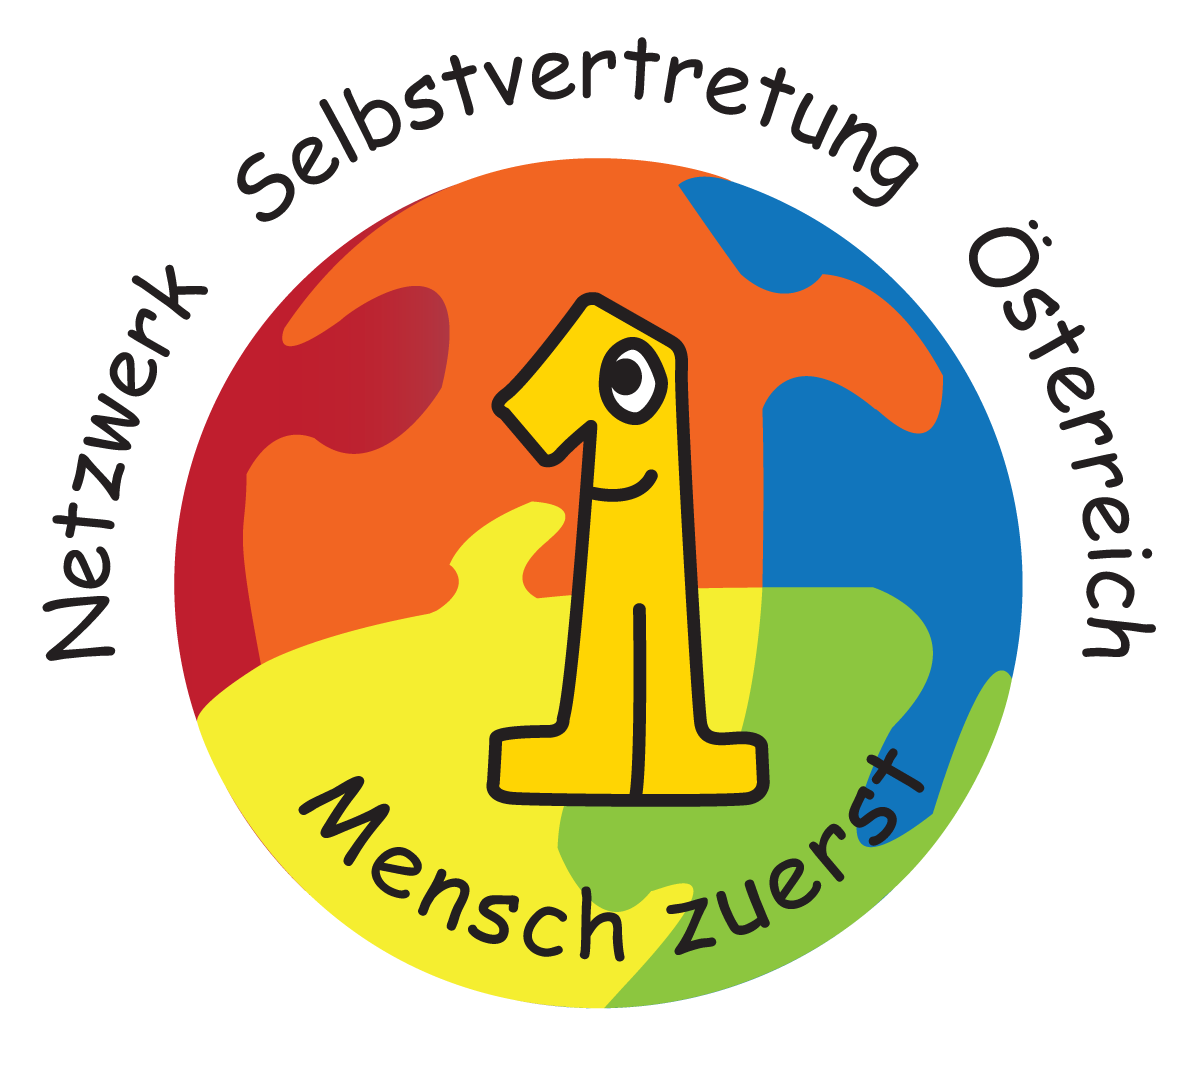 Das ist das Logo vom Netzwerk Selbstvertretung Österreich.